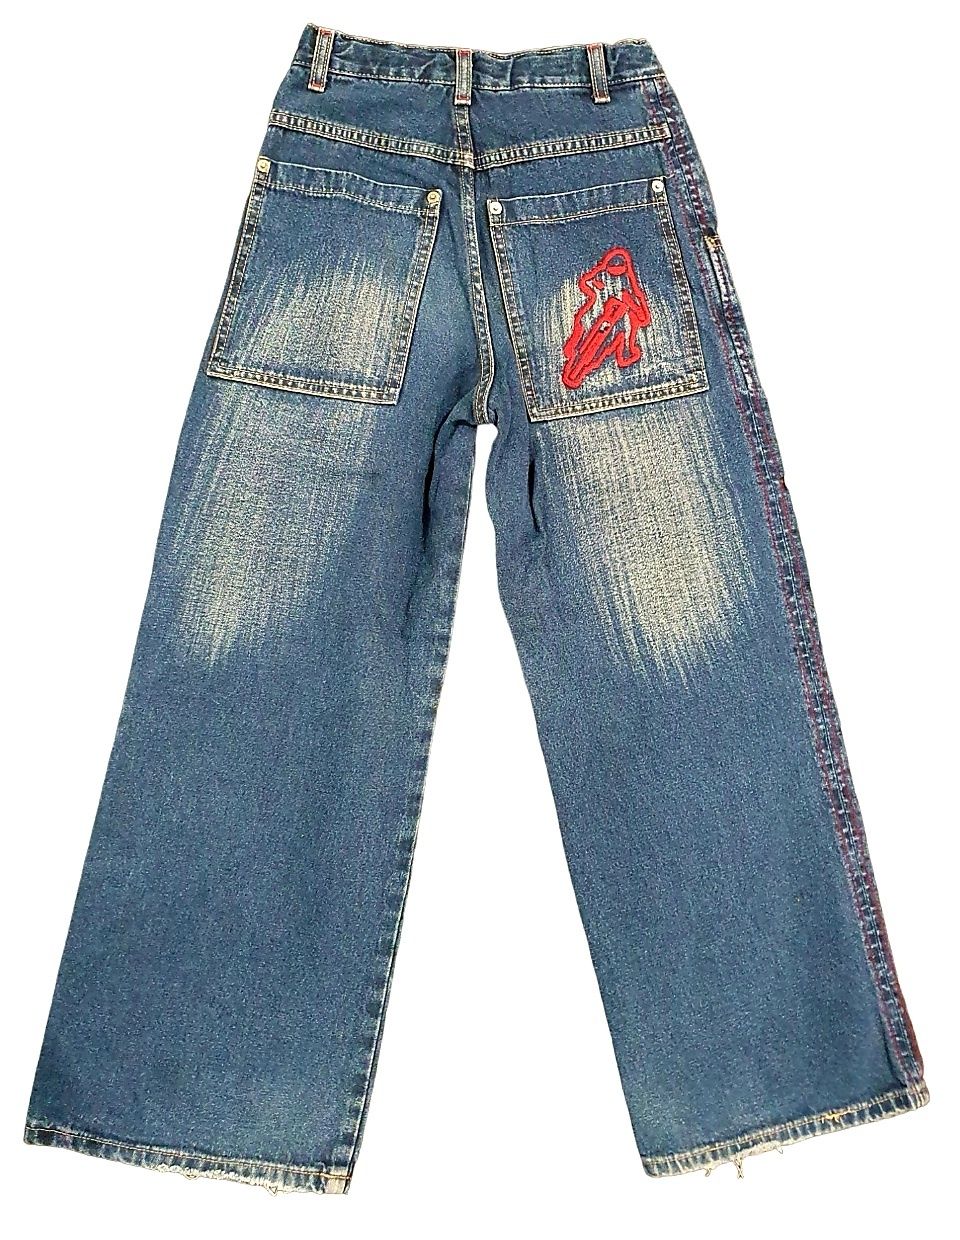 Джинсовый комплект на ребёнка/джинсы детские GeeJay/джинсовая куртка